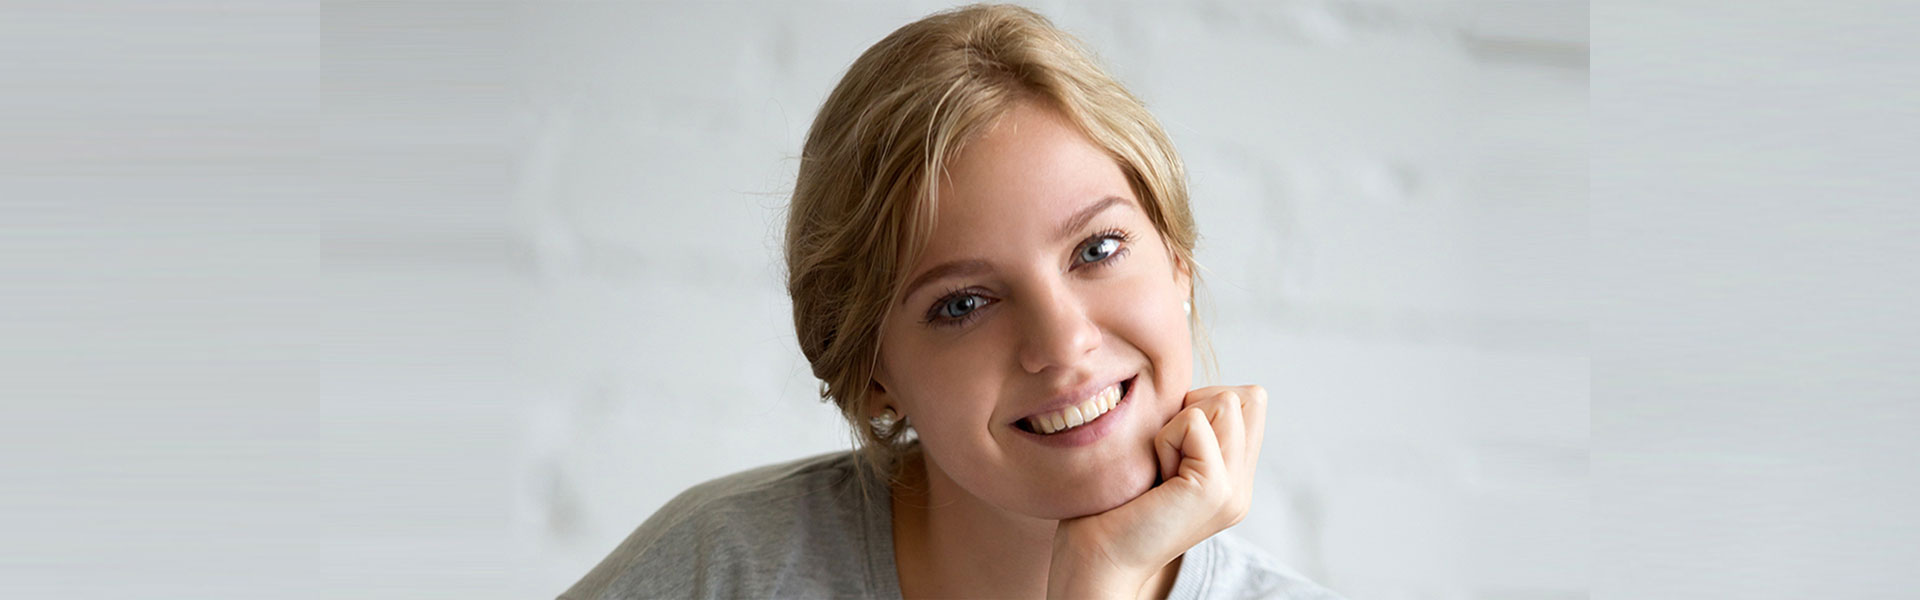 Chcesz zmienić swój uśmiech na lepsze – stomatologia estetyczna może pomóc Ci w osiągnięciu celu